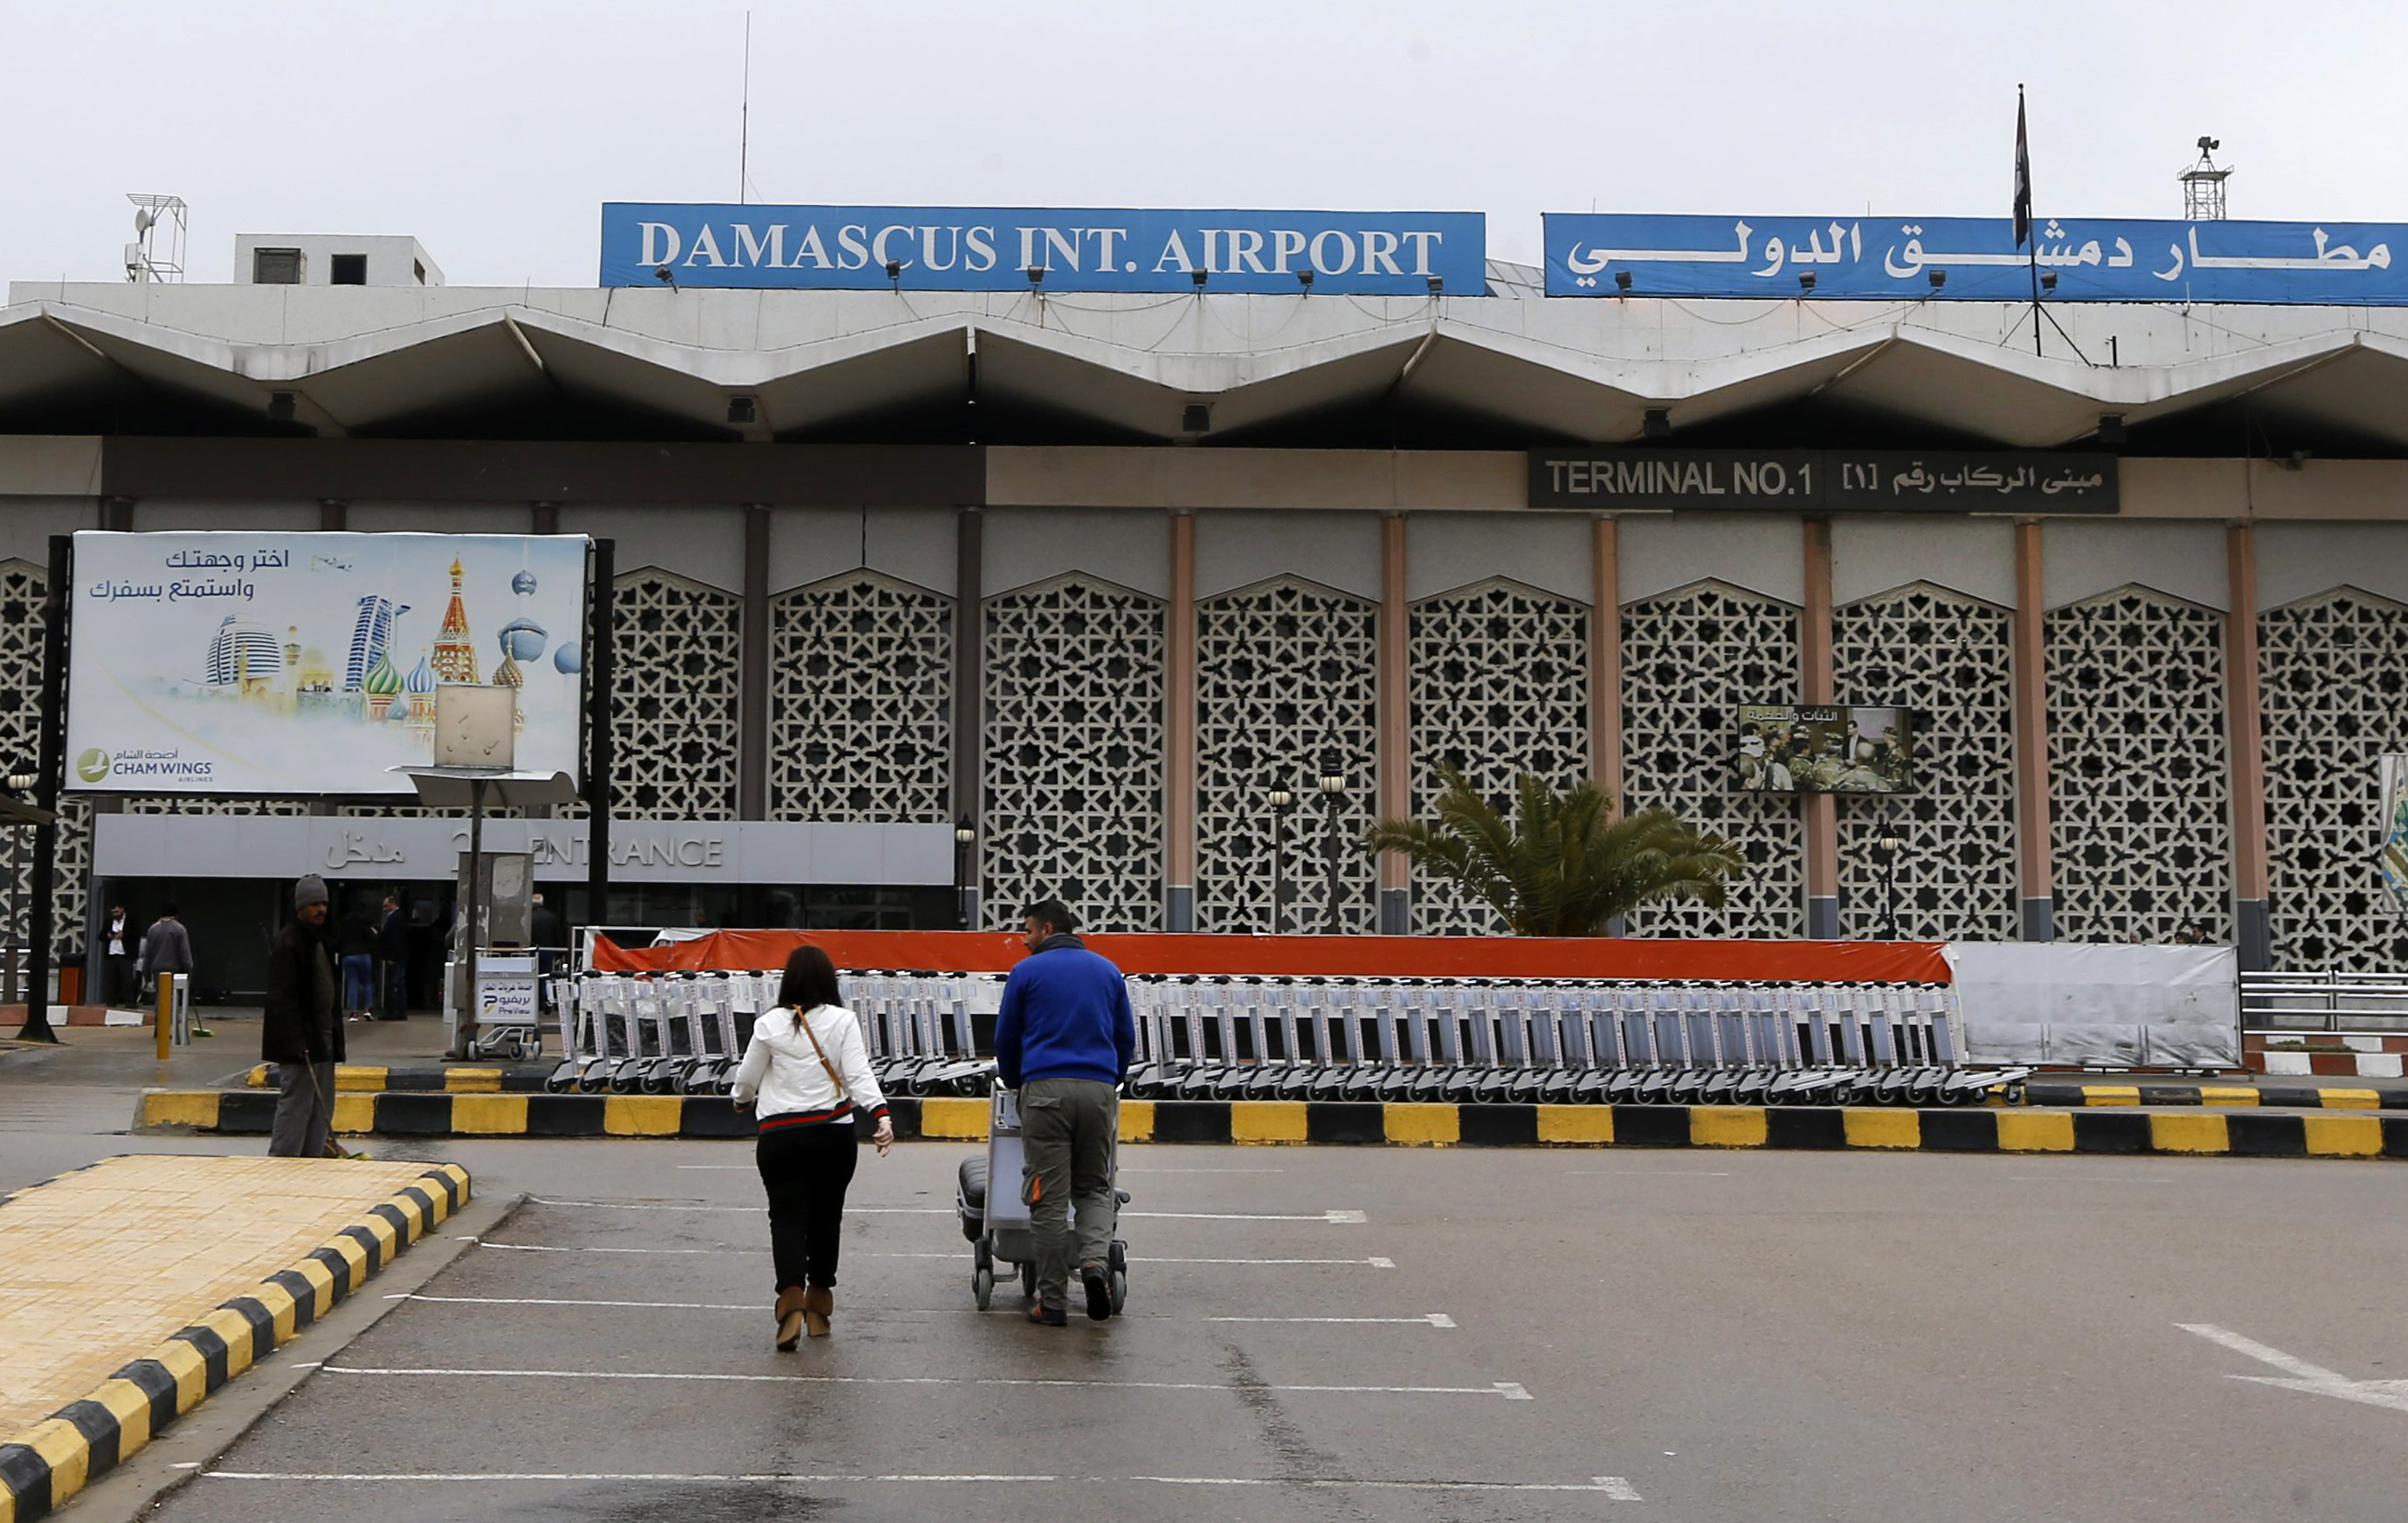 بعد تعرضه لقصف إسرائيلي وتوقفه .. عودة مطار دمشق الدولي للعمل